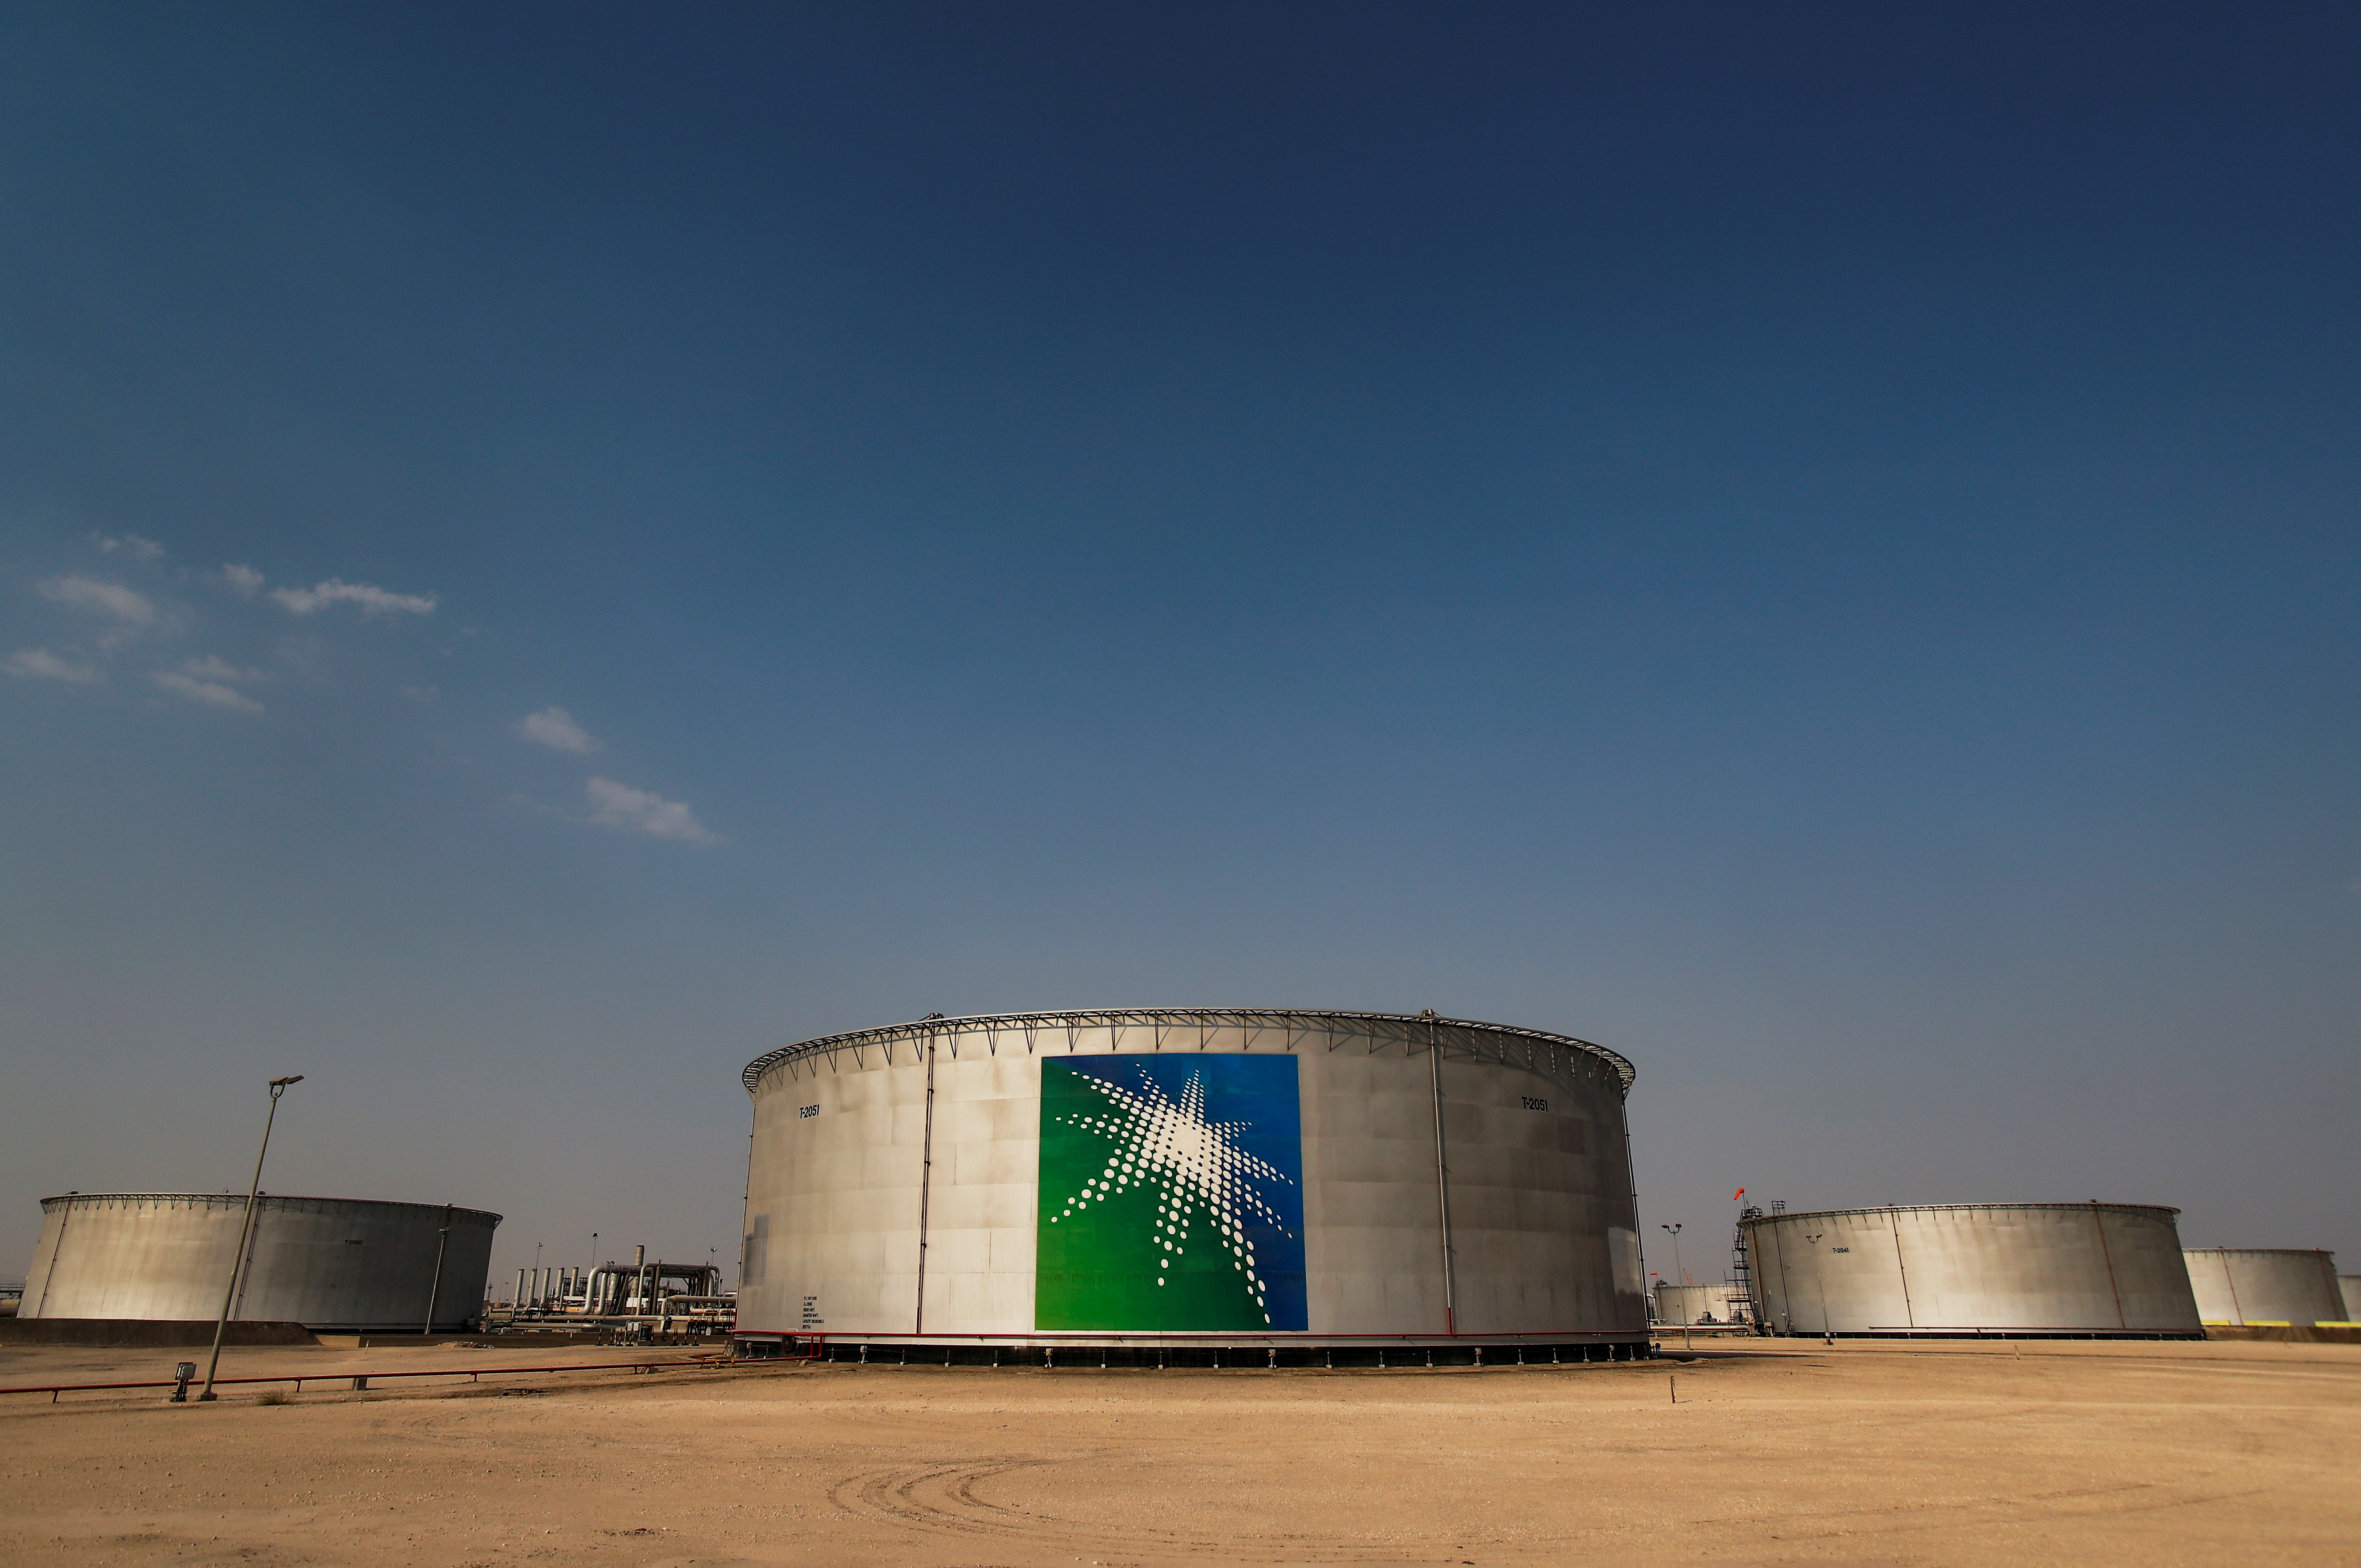 منظر لخزانات نفط تحمل علامات تجارية في منشأة أرامكو السعودية النفطية في بقيق